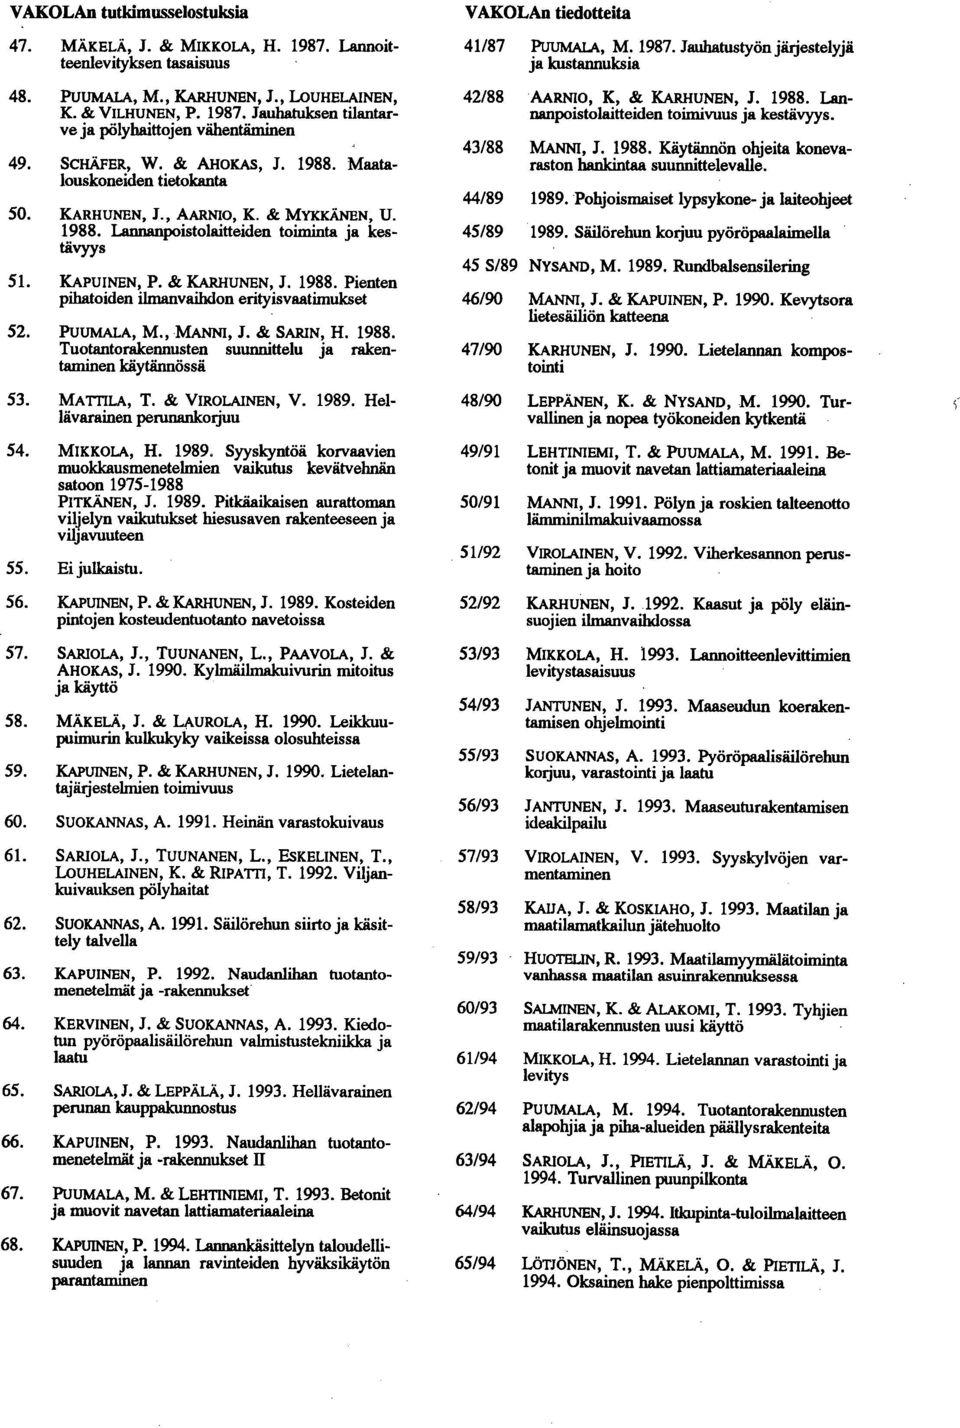 , MANNI, J. & SARIN, H. 1988. Tuotantorakennusten suunnittelu ja rakentaminen käytännössä VAKOLAn tiedotteita 41/87 PUUMALA, M. 1987.